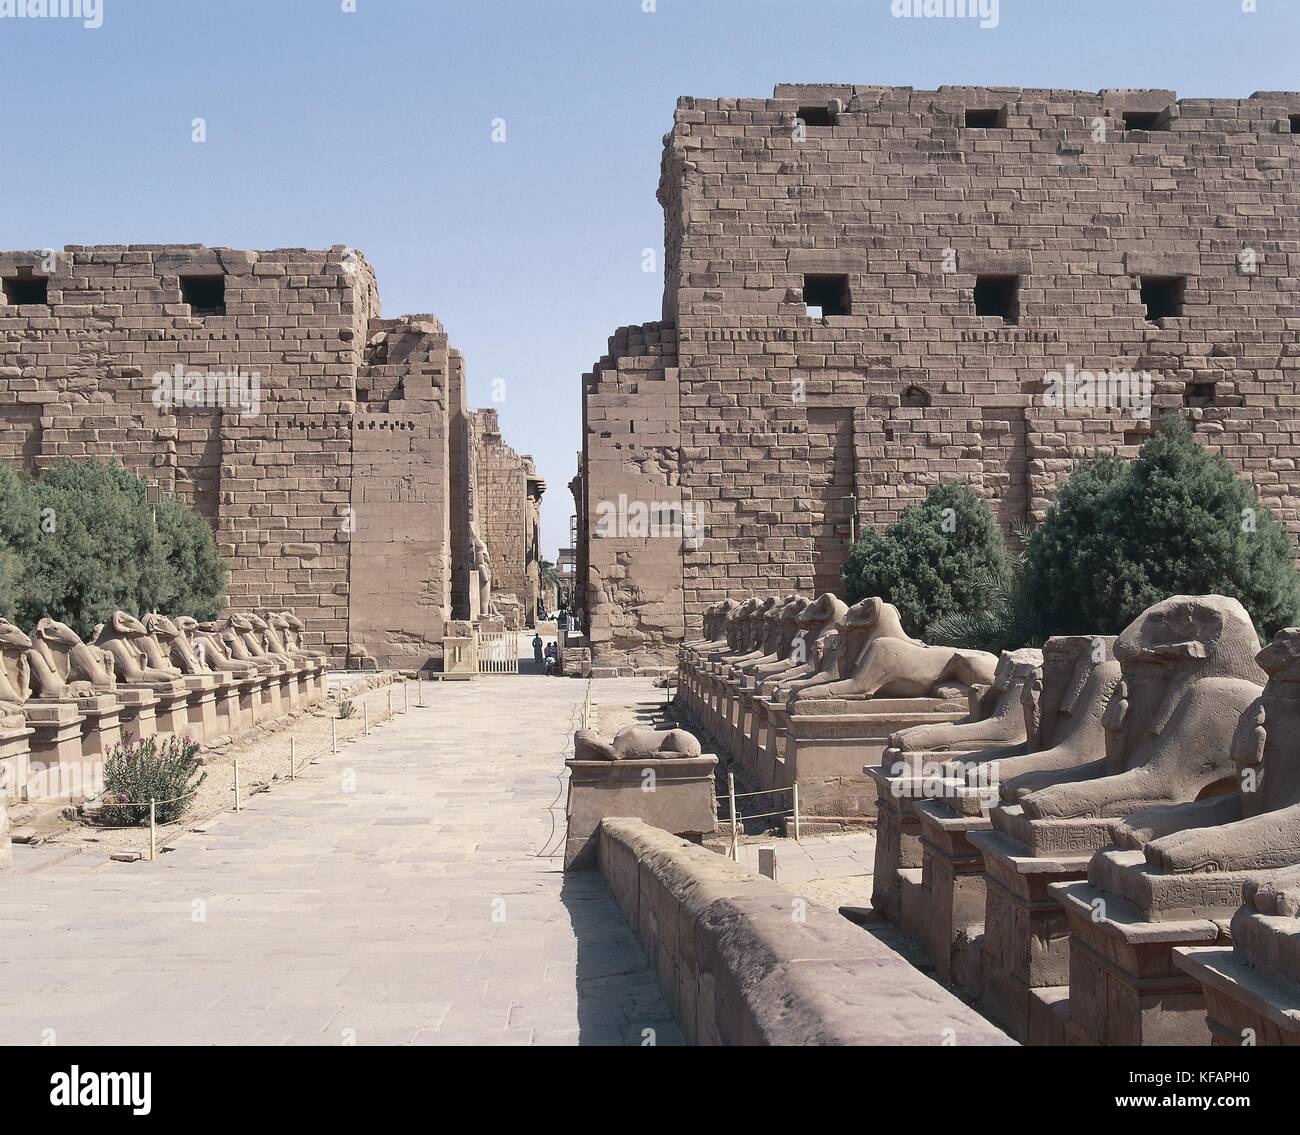 Egipto, antigua Tebas (lista de patrimonio mundial de la UNESCO, 1979). Luxor Karnak. gran templo de Amón. avenida de esfinges con cabeza de carnero que representa el dios Amón Foto de stock